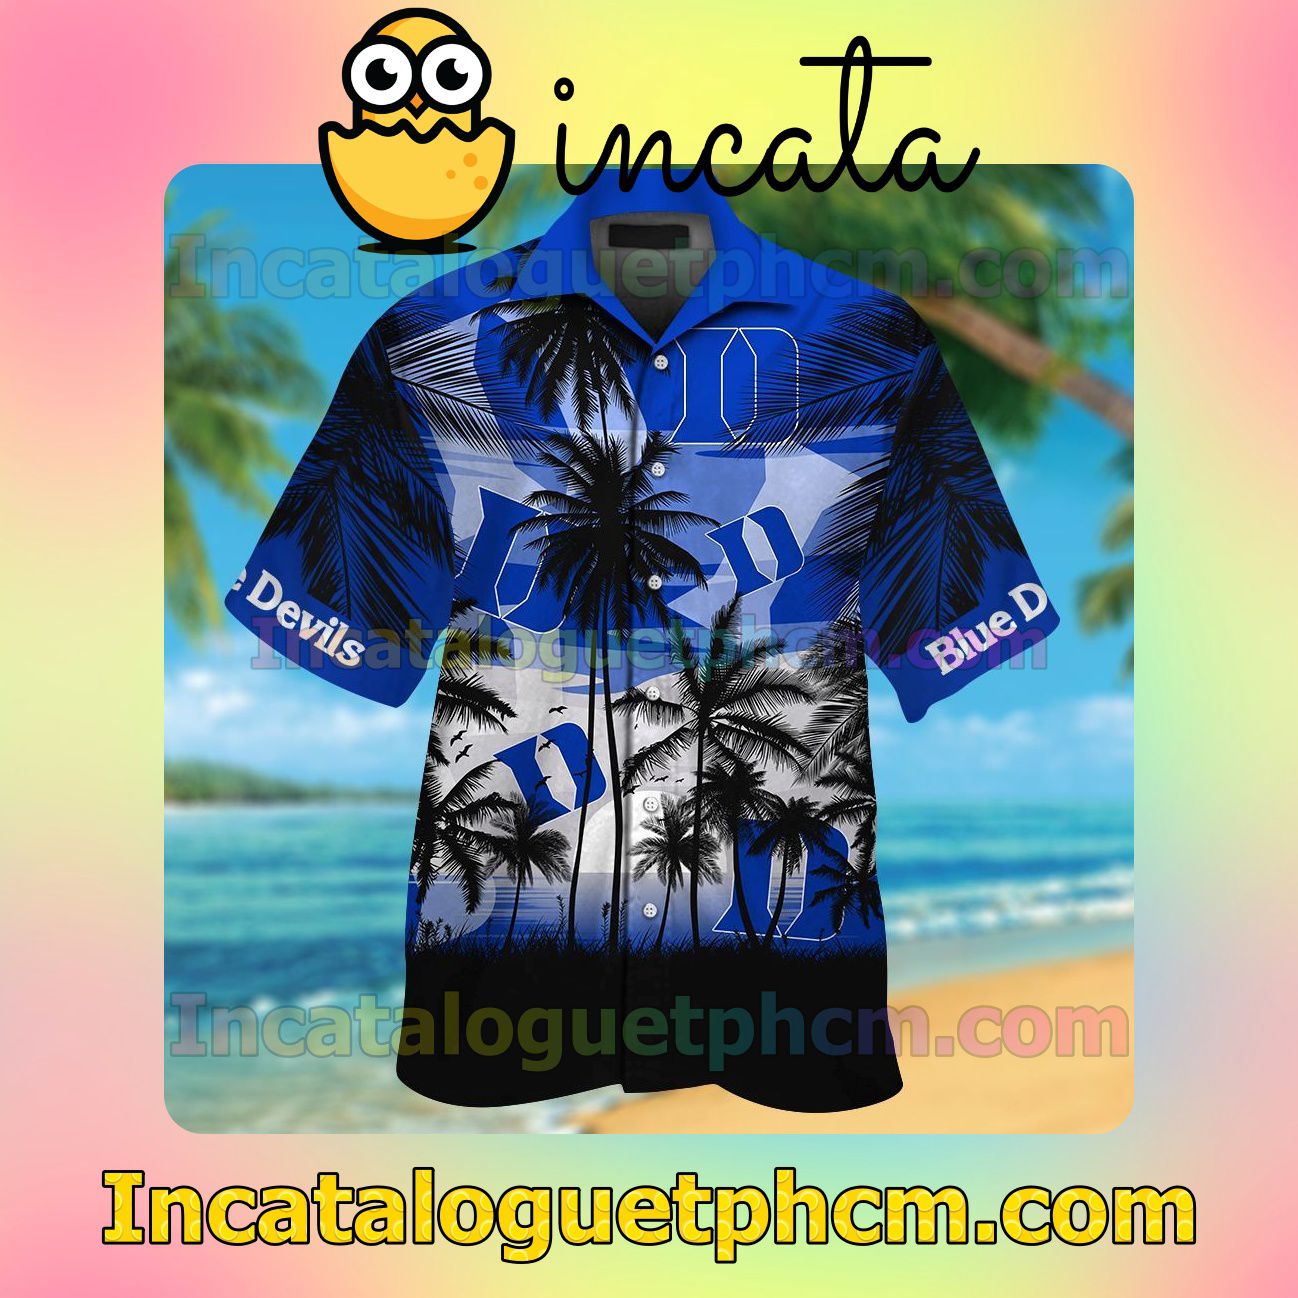 Duke Blue Devils Tropical Beach Vacation Shirt, Swim Shorts